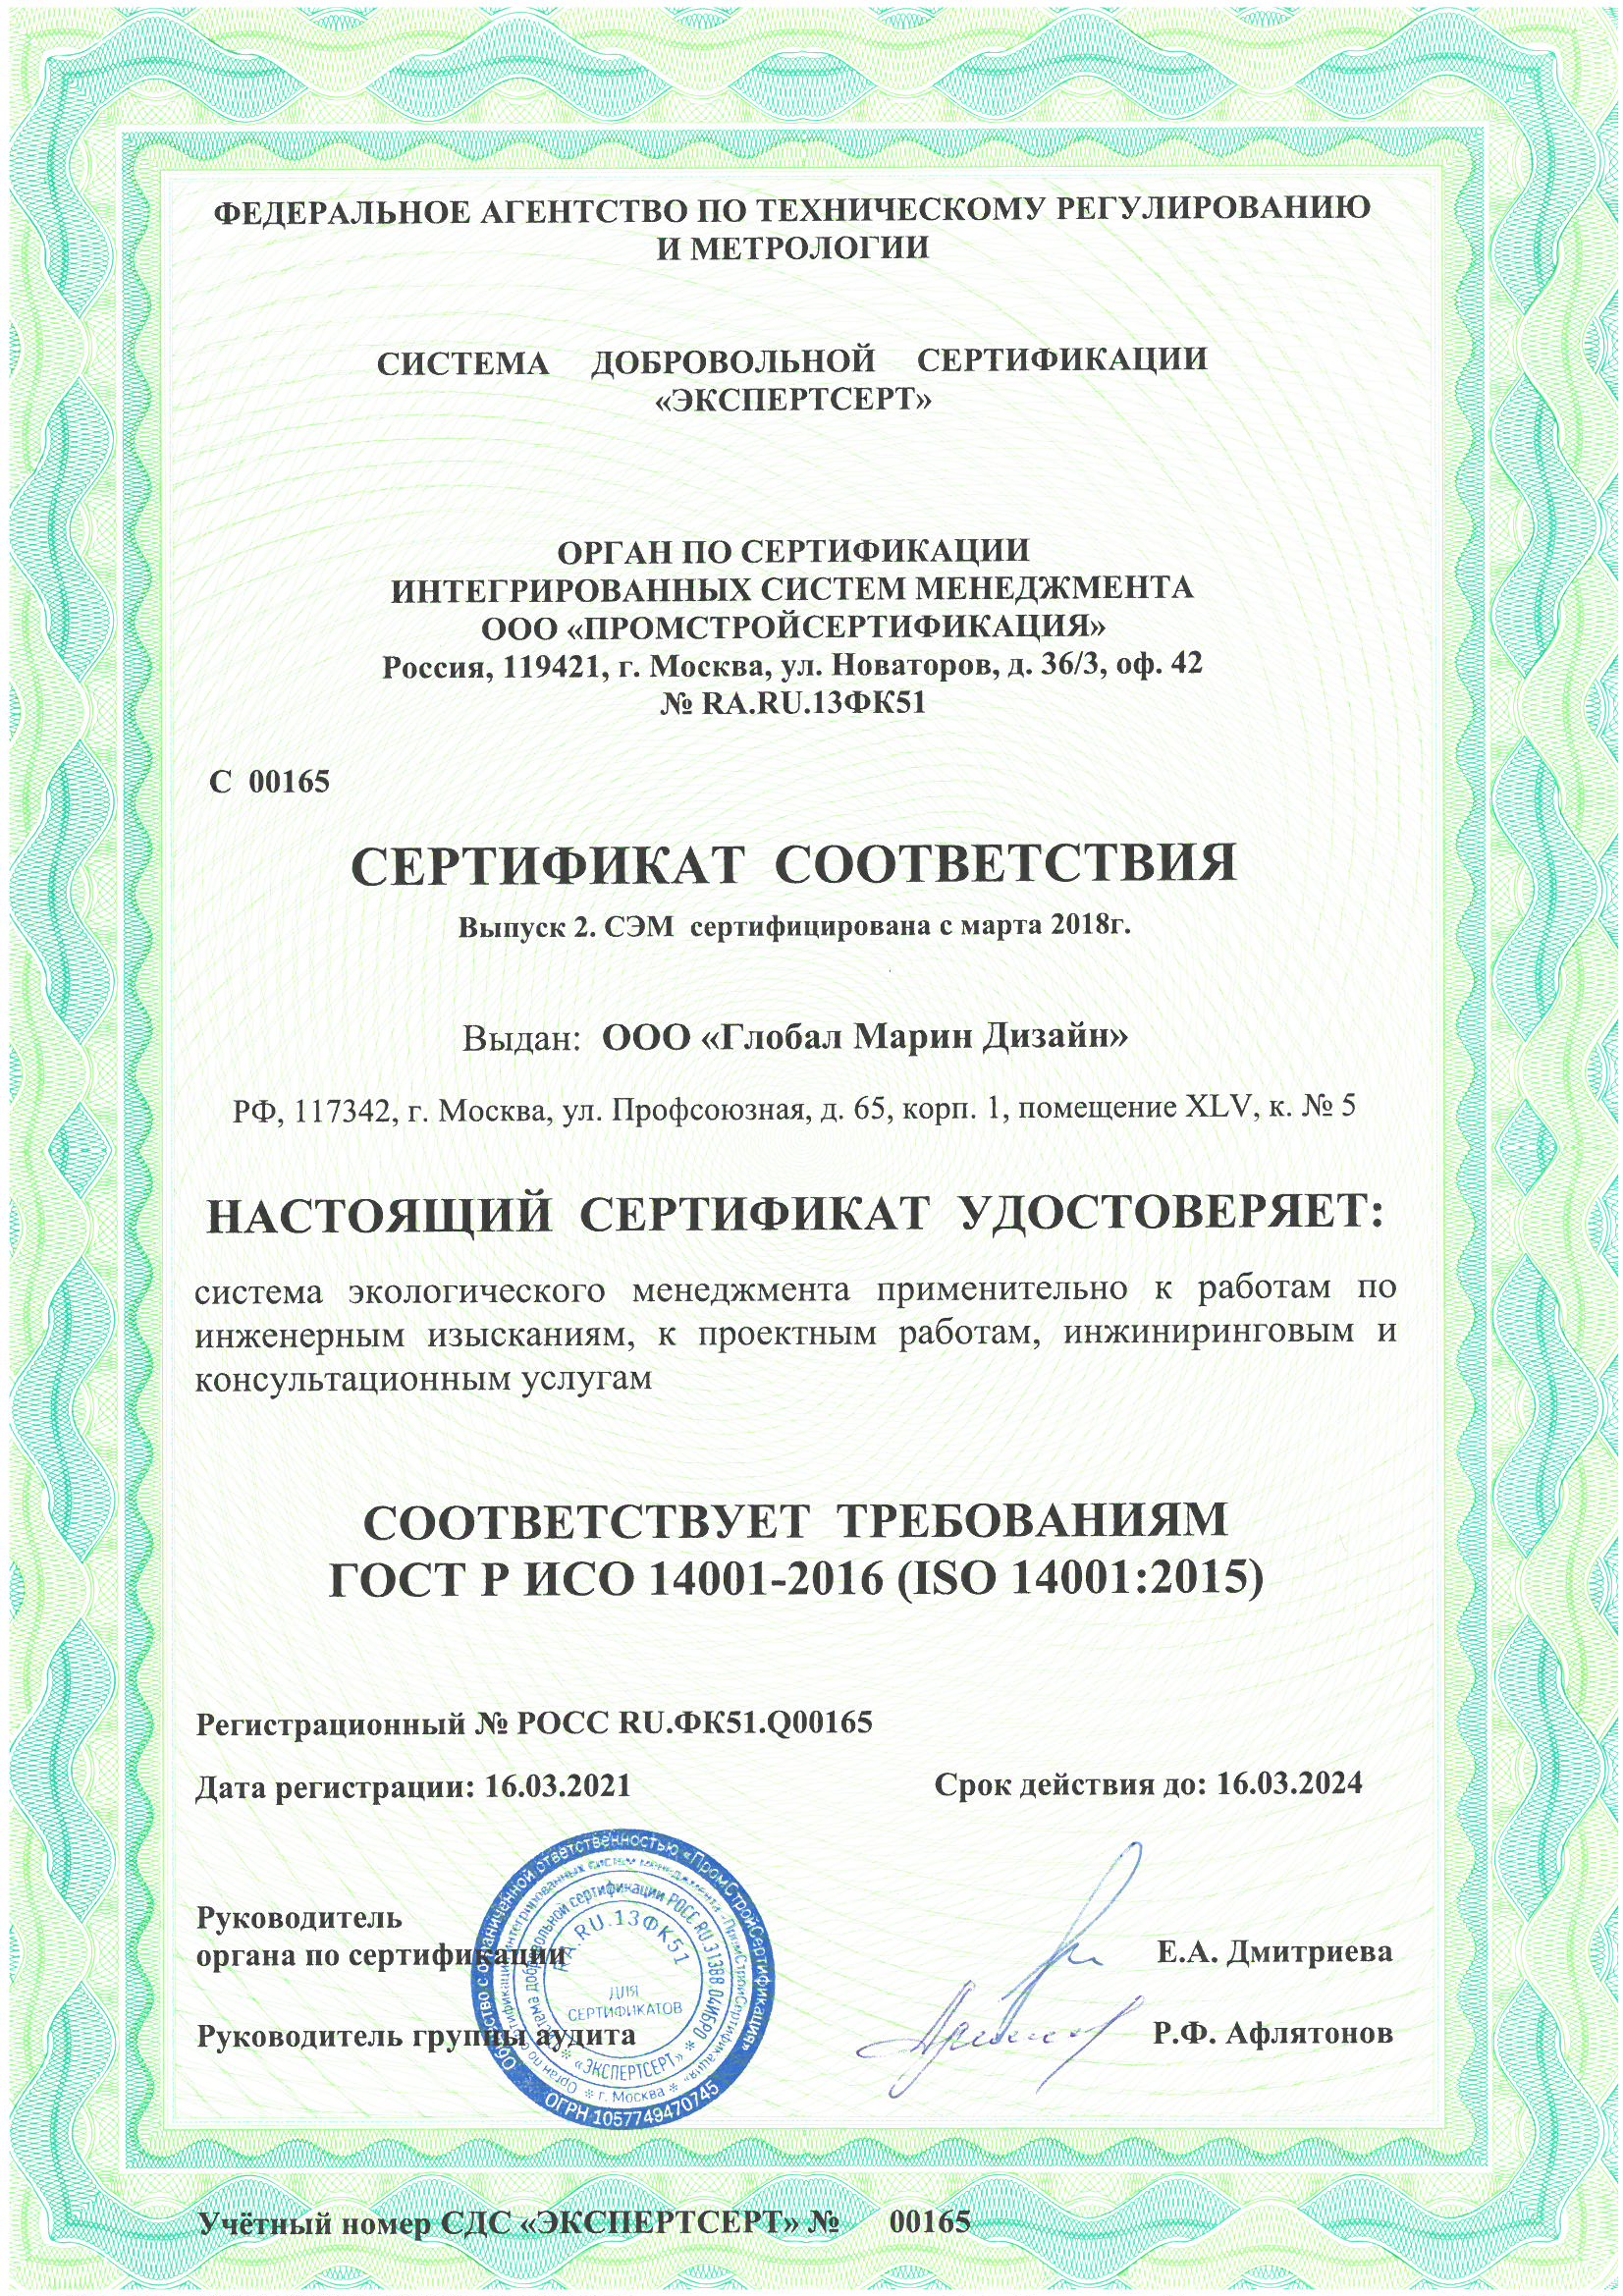  ГОСТ Р ИСО 14001-2016_ISO 14001-2015